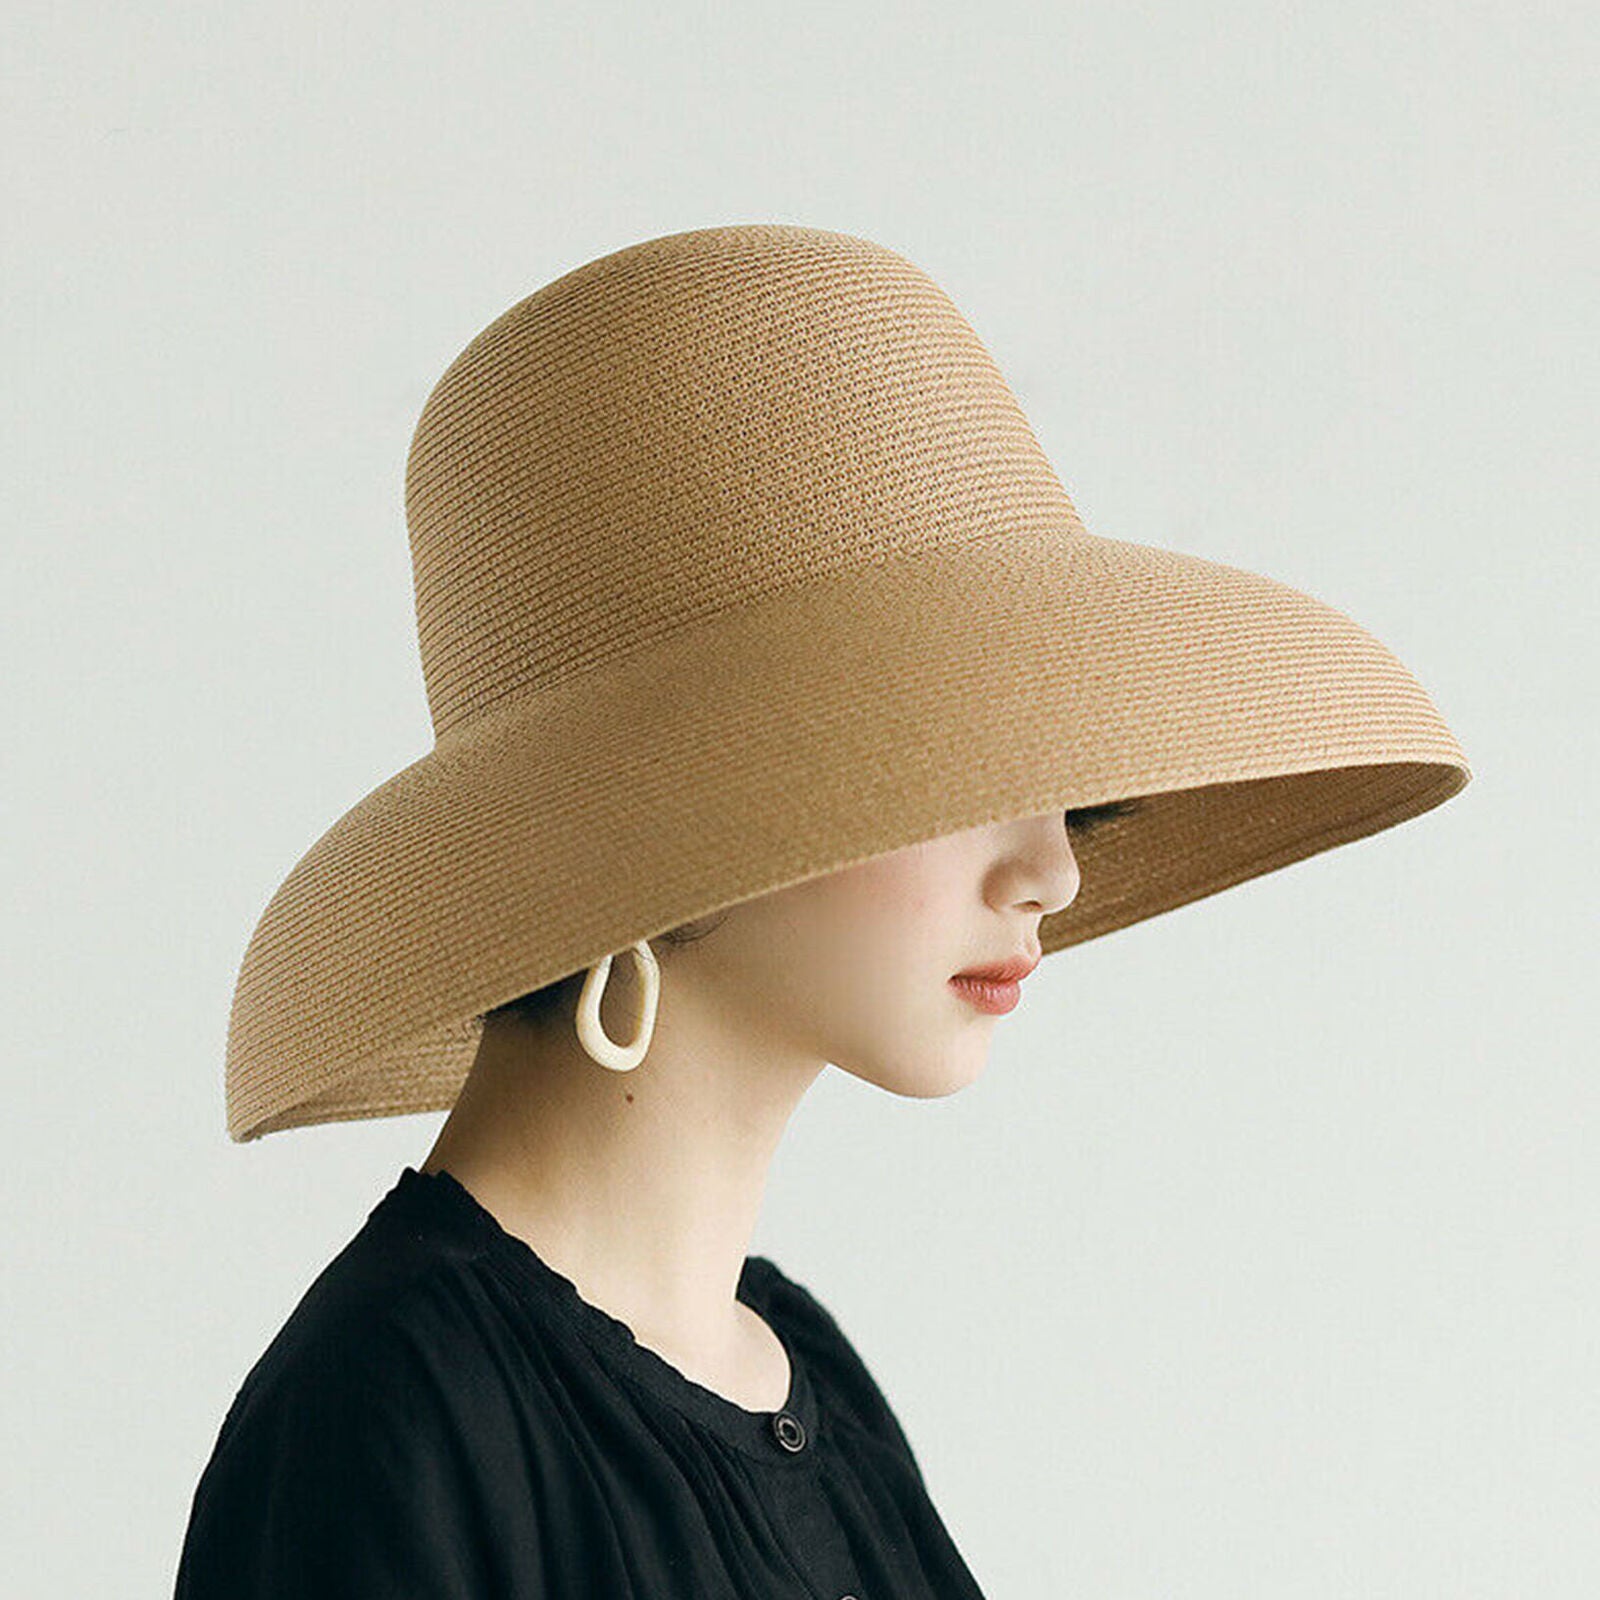 Handmade Women Ladies Summer Straw Hat Hepburn Style Wide Brim Beach Sun Hats